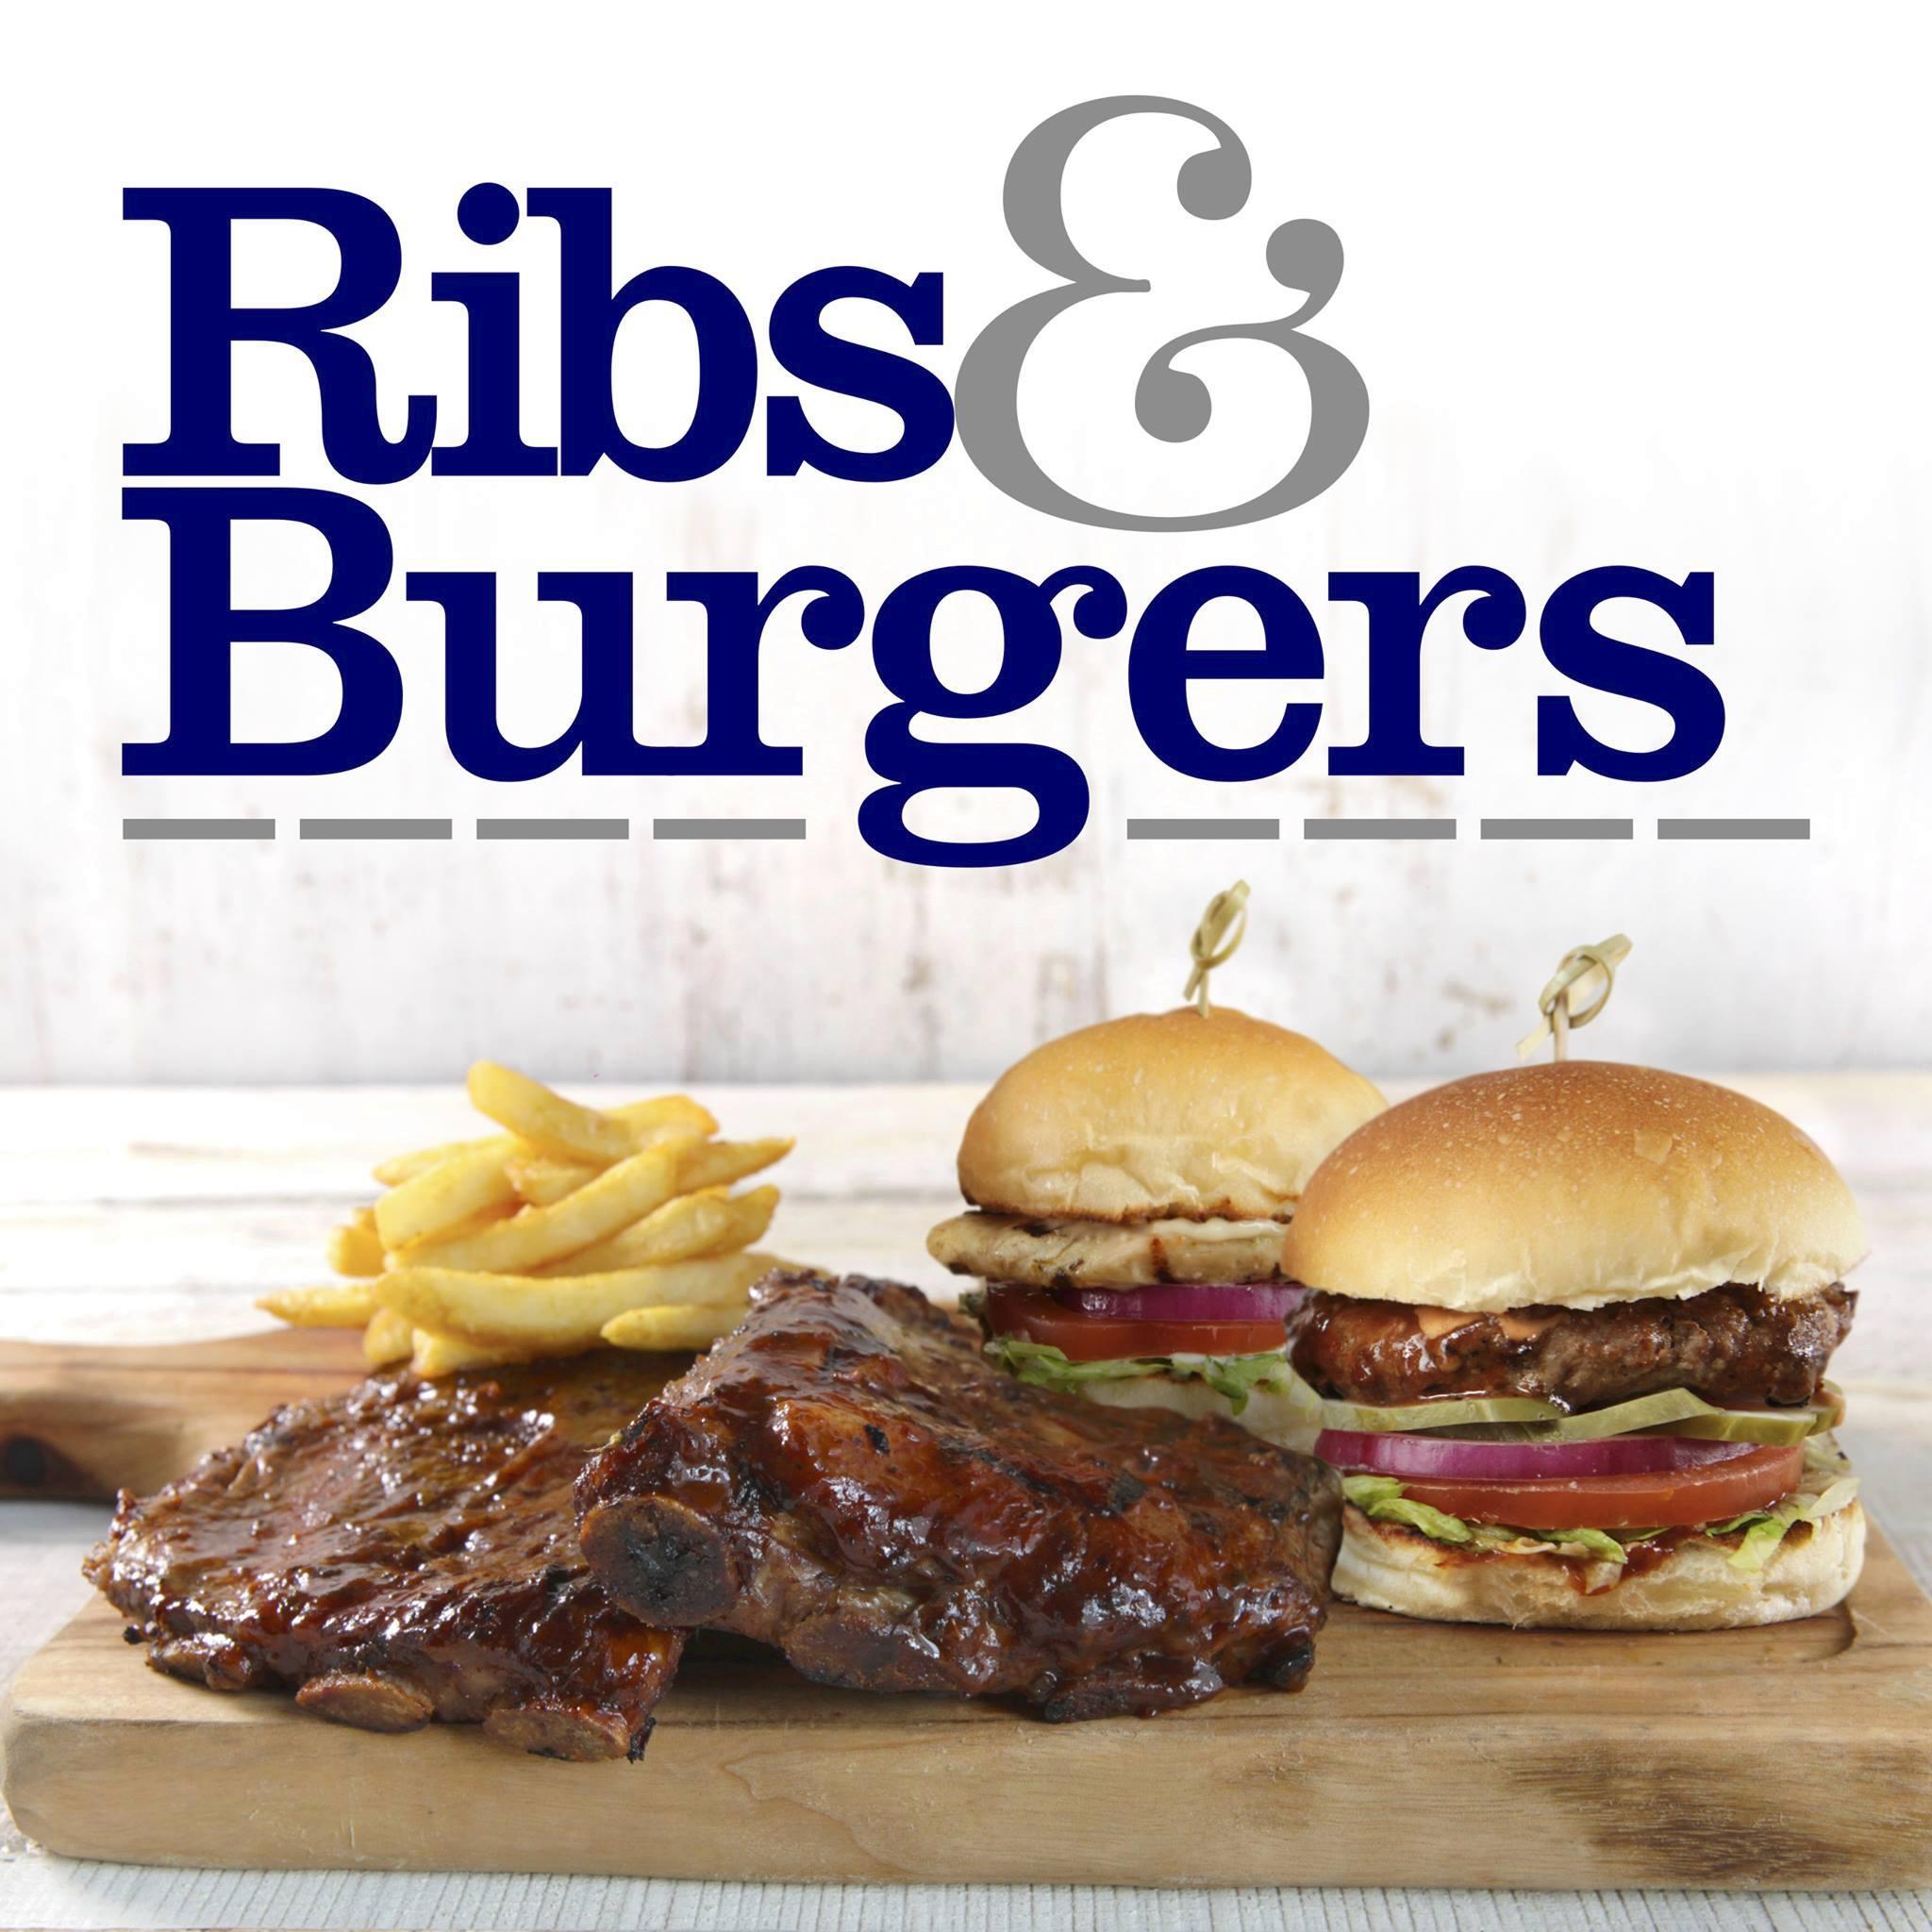 Ribs and burgers